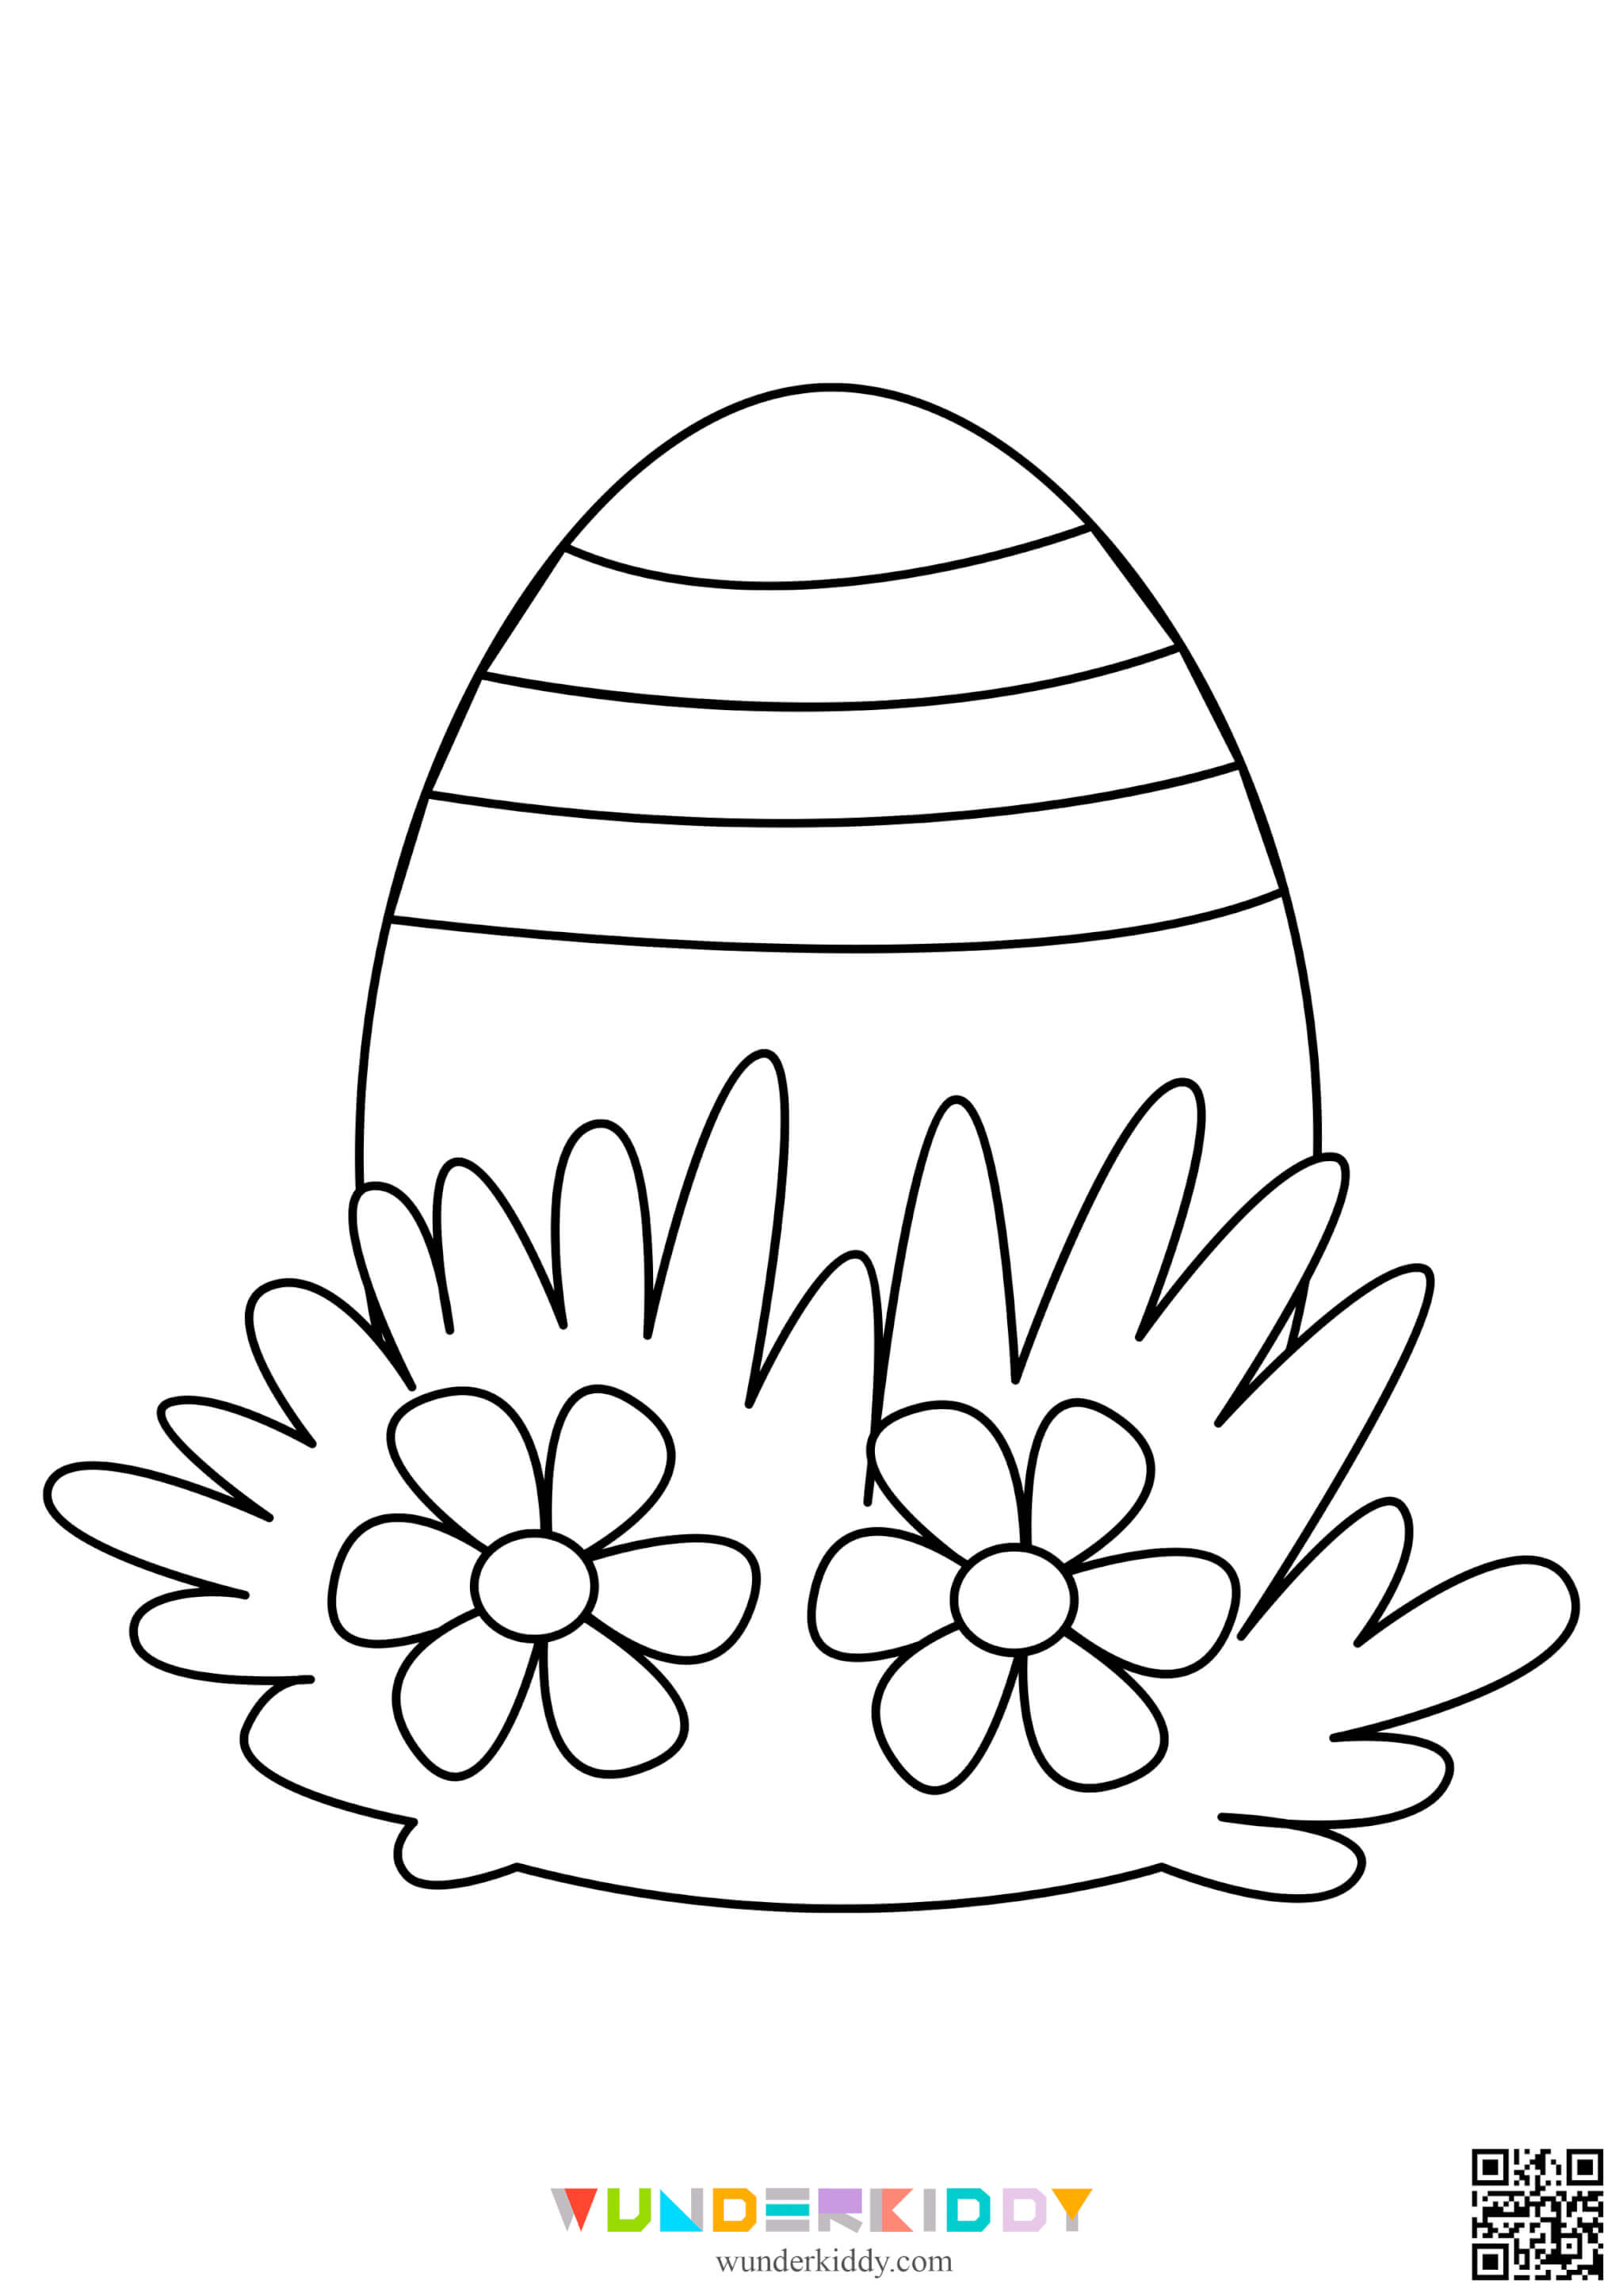 Розмальовки «Великодні яйця» для дітей - Зображення 6